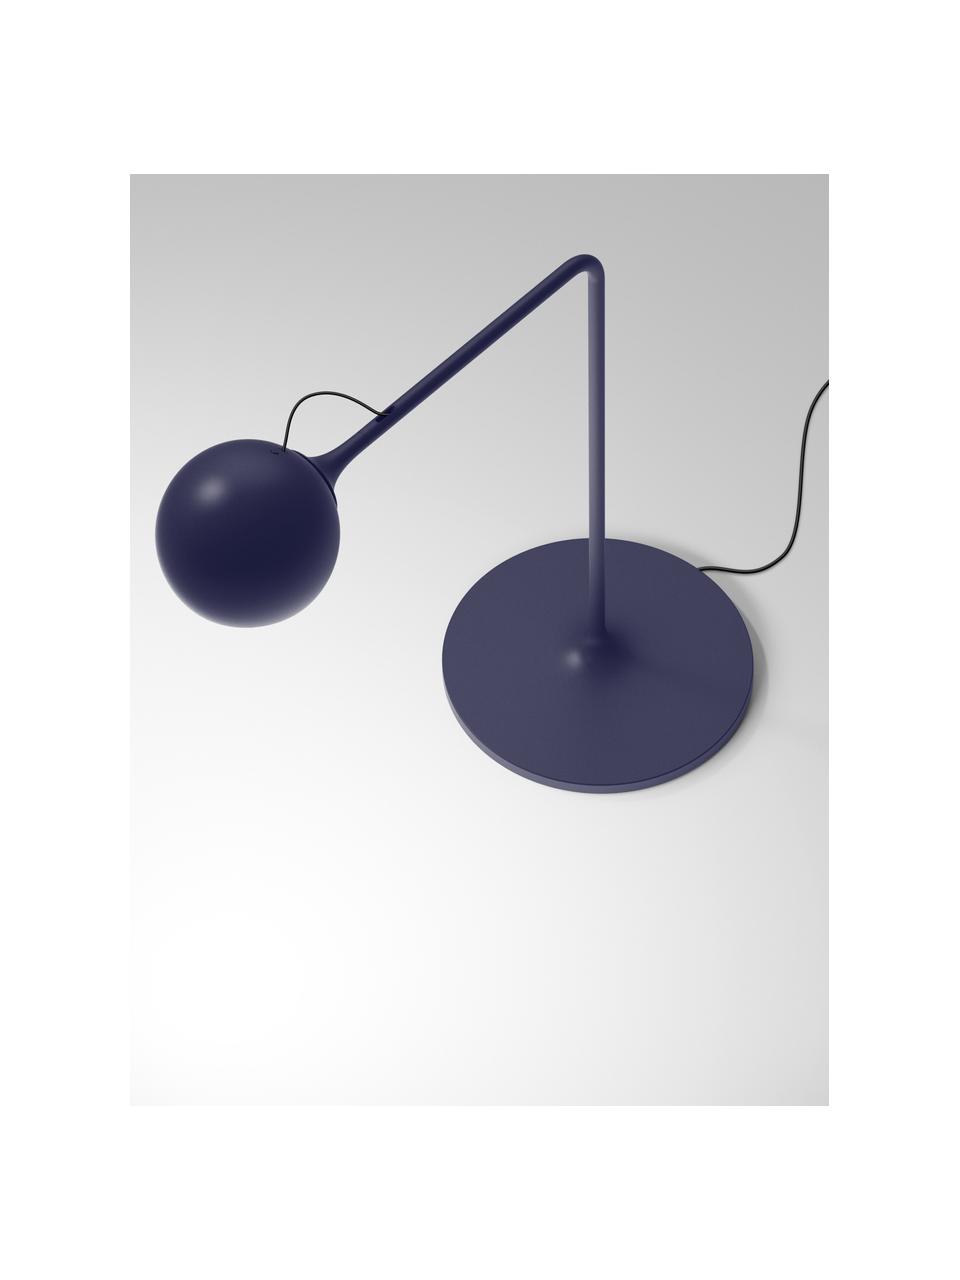 Lampa biurkowa LED z funkcją przyciemniania lxa, Ciemny niebieski, S 40 x W 42 cm